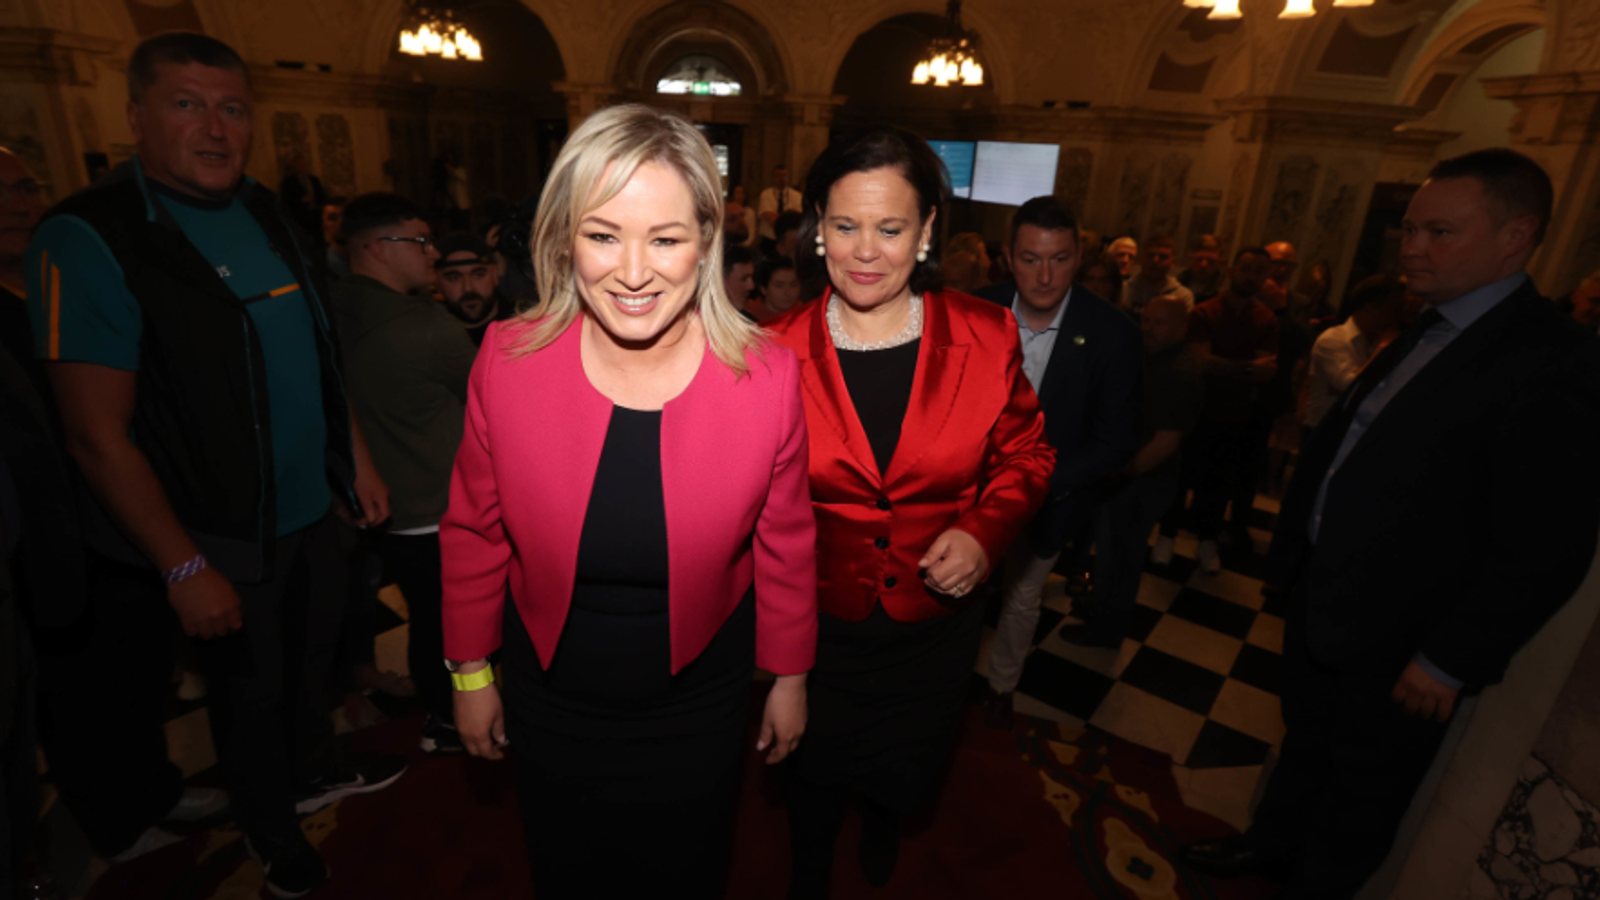 Sinn Fein makes strong start in Northern Ireland council elections | Politics News